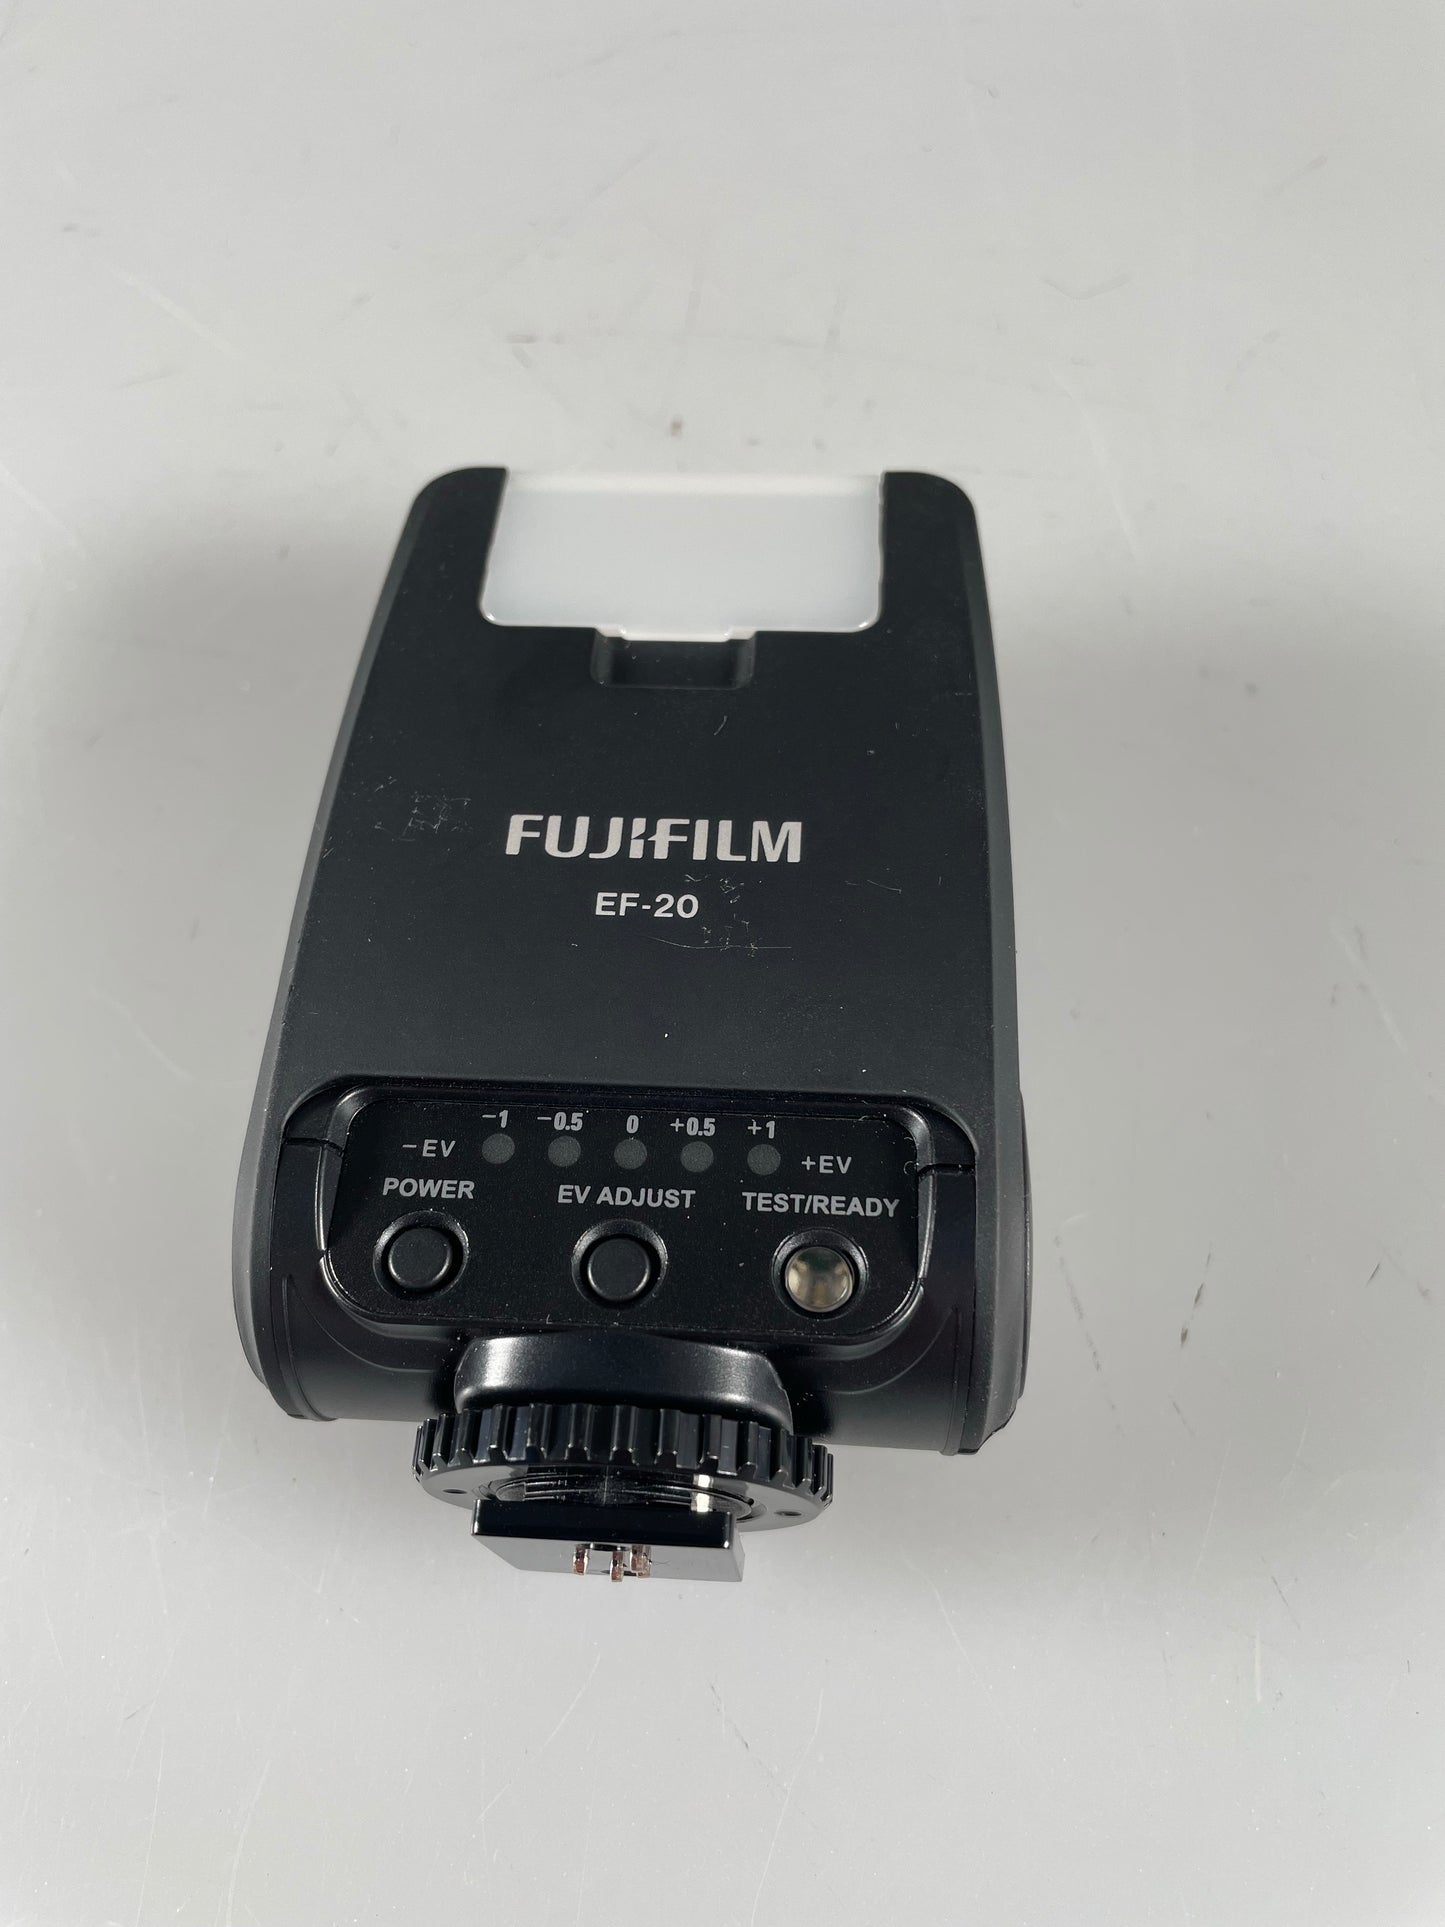 Fujifilm EF-20 Flash Unit for Fuji X Mount camera